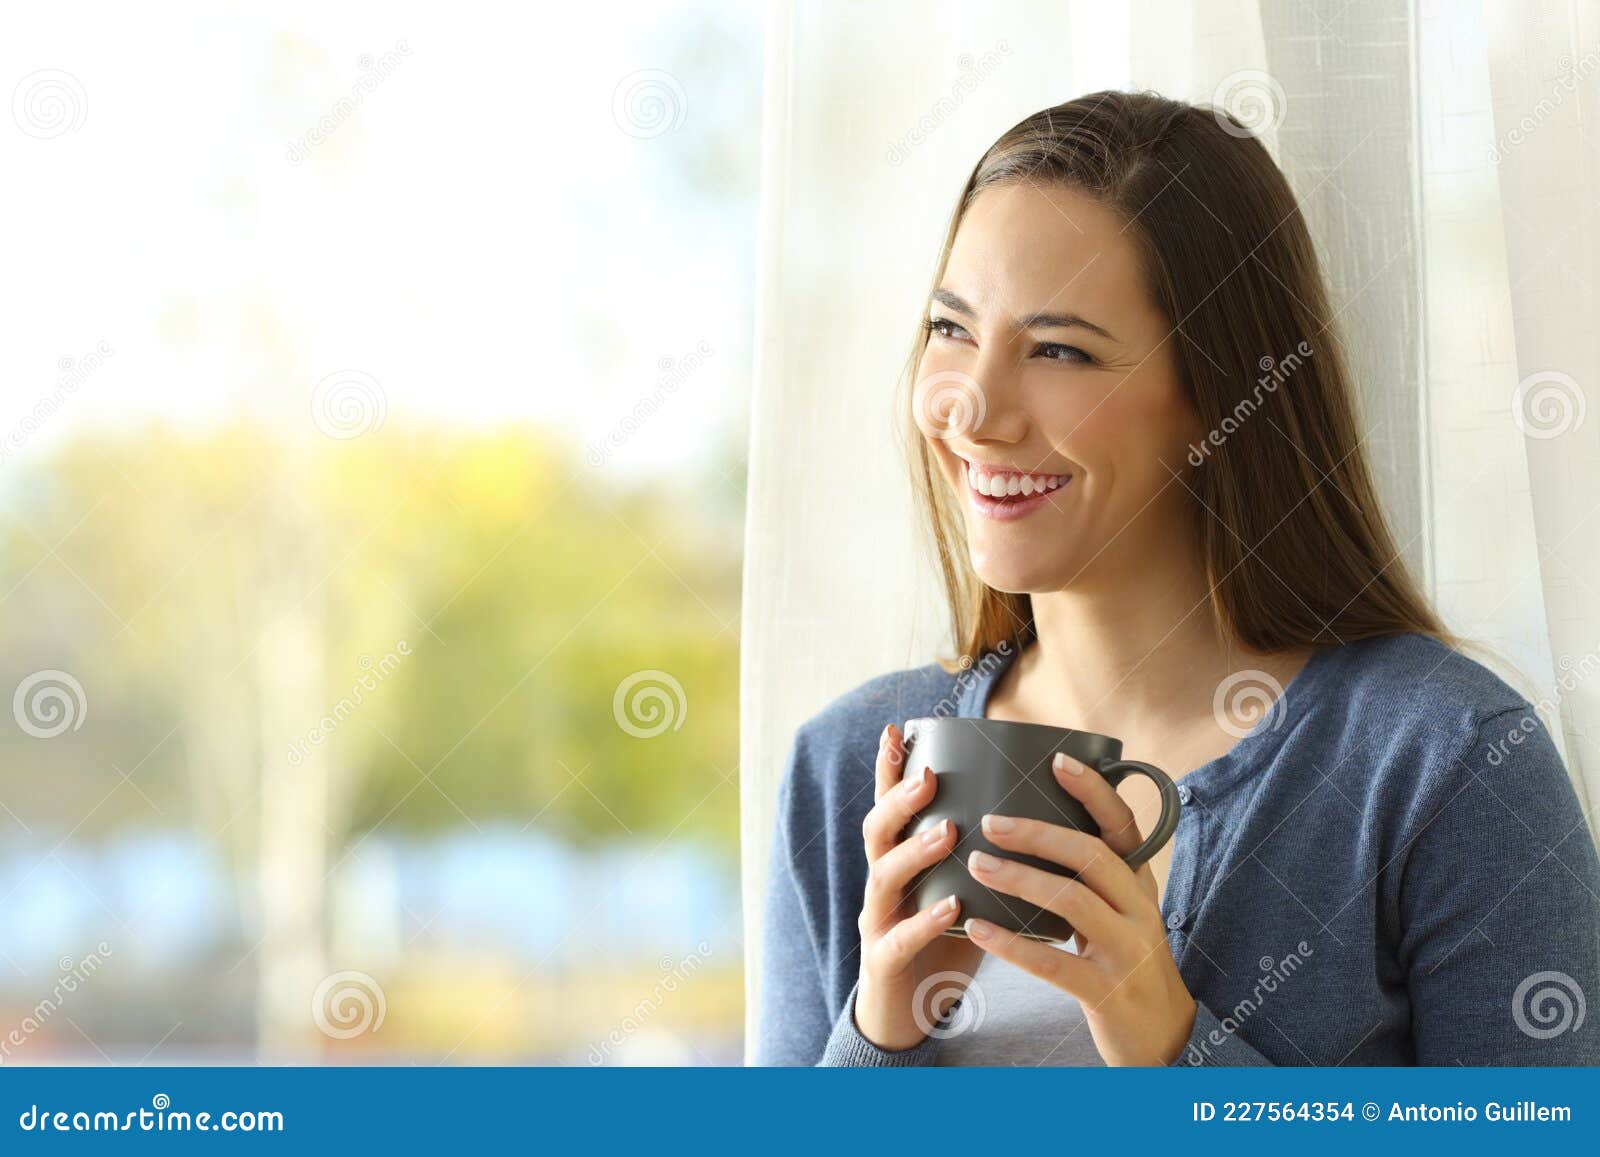 happy pensive woman looks at side beside a window